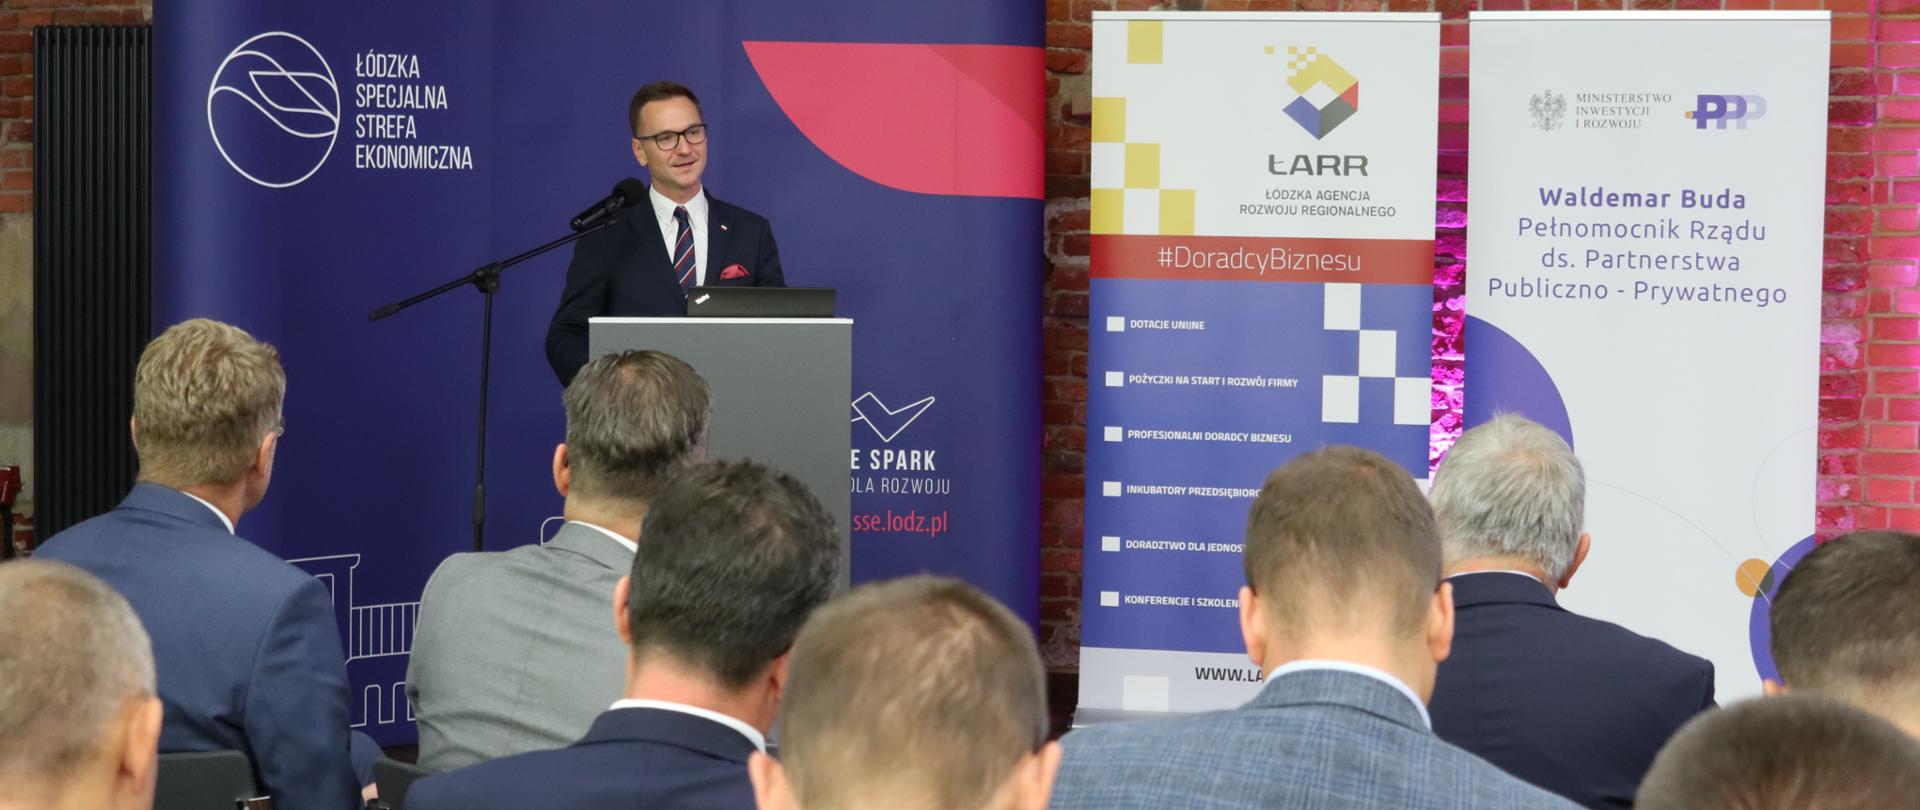 Szkolenie dotyczące PPP, które odbyło się w Łodzi 10 września 2019 roku.